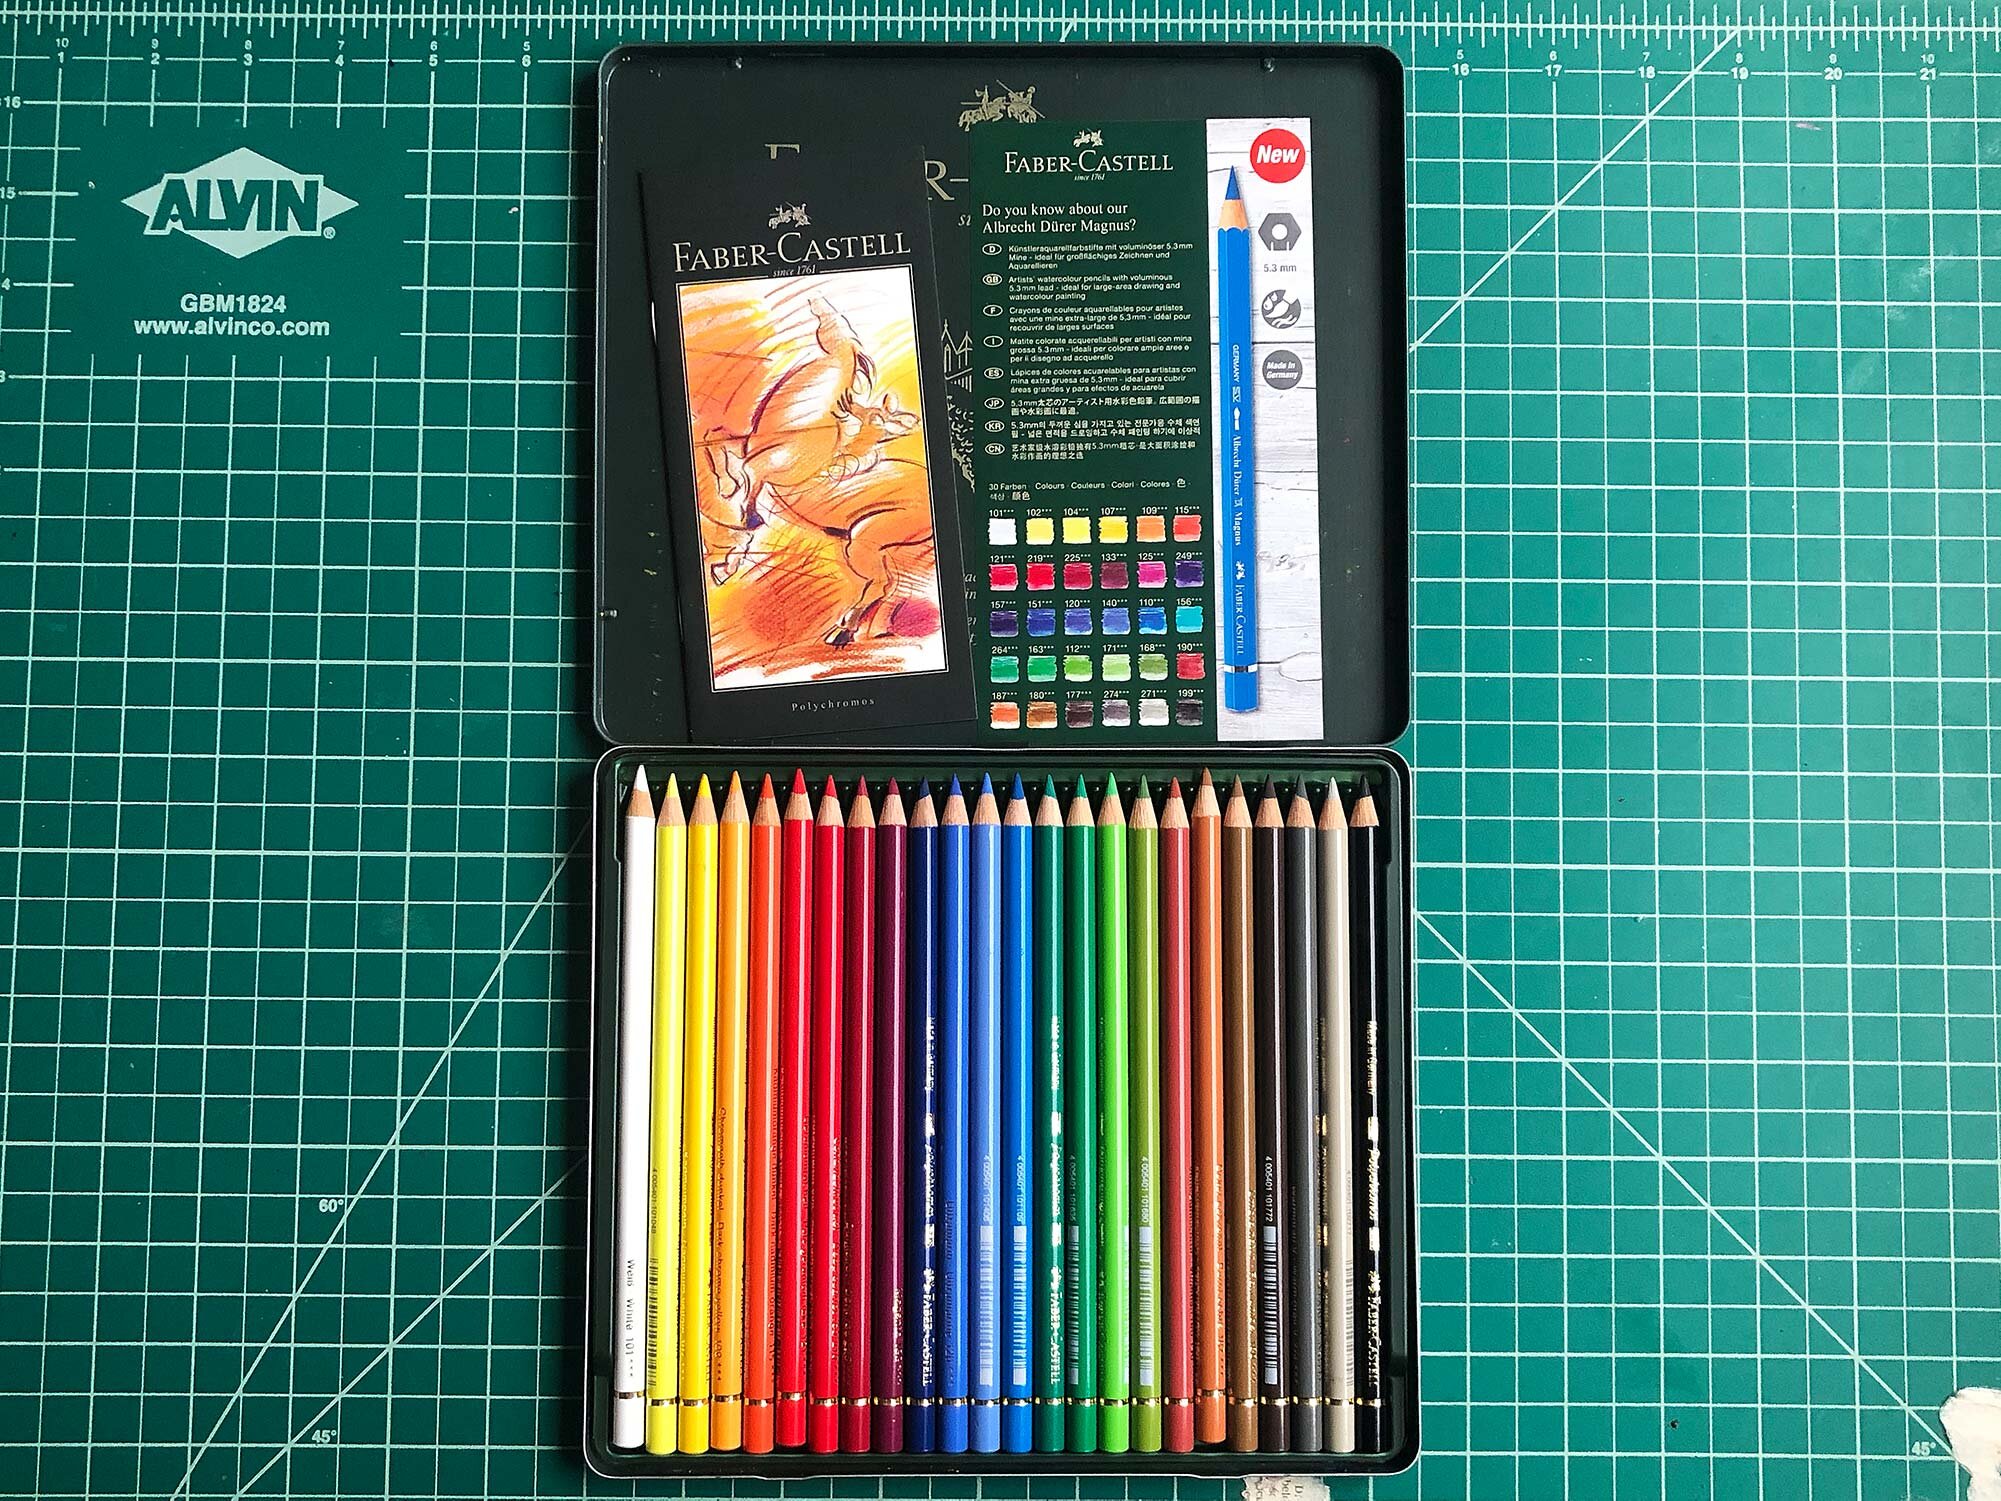 PrismaColor Colored Pencils for Adult Coloring, 151 Piece Art Kit, Artist  Premier Wooden Soft Core Leads, Includes Sharpener [151 pc. Set] 